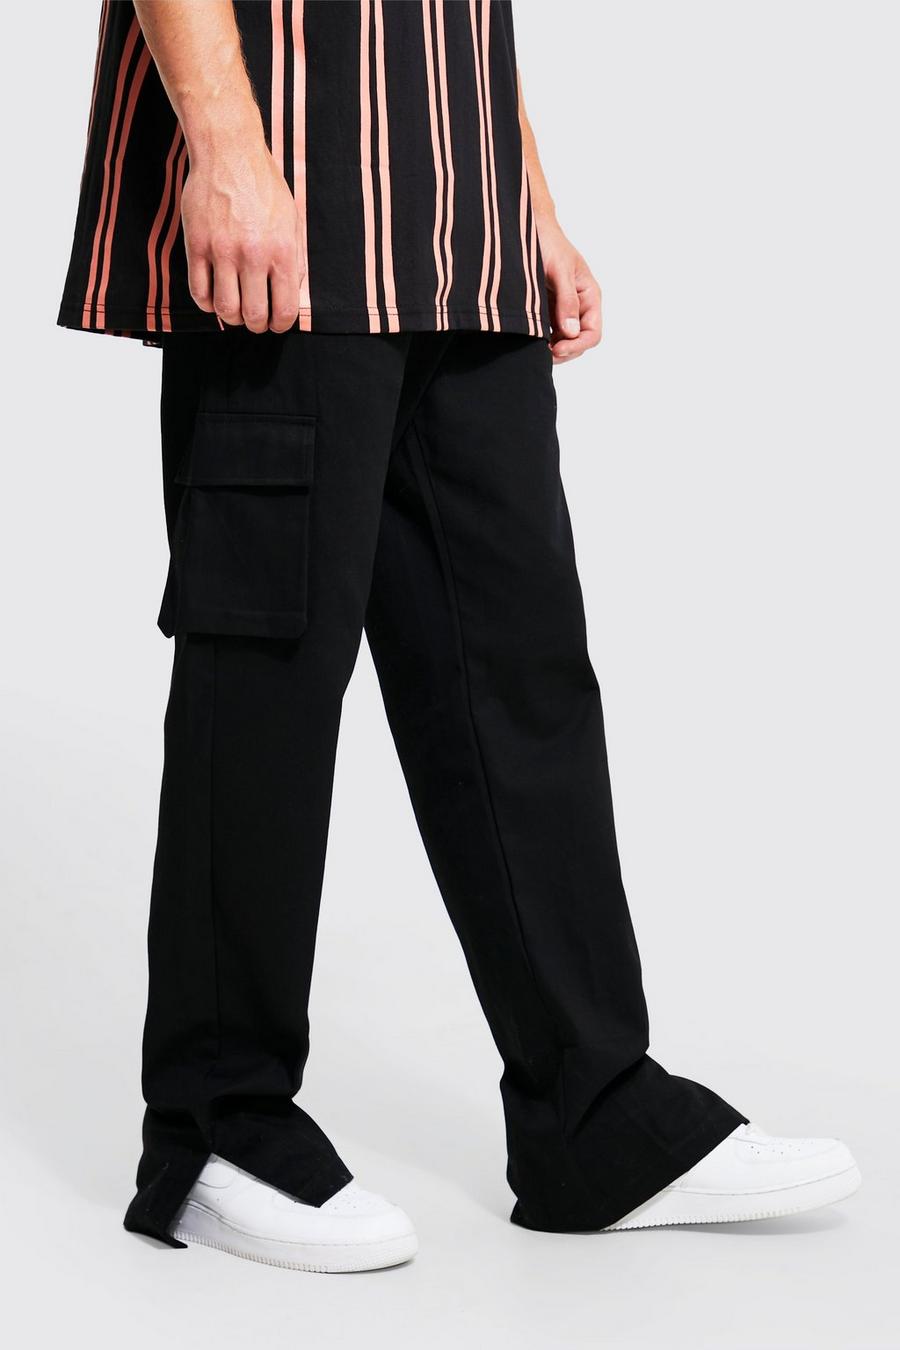 Pantaloni Chino Tall rilassati stile Cargo con spacco sul fondo, Black nero